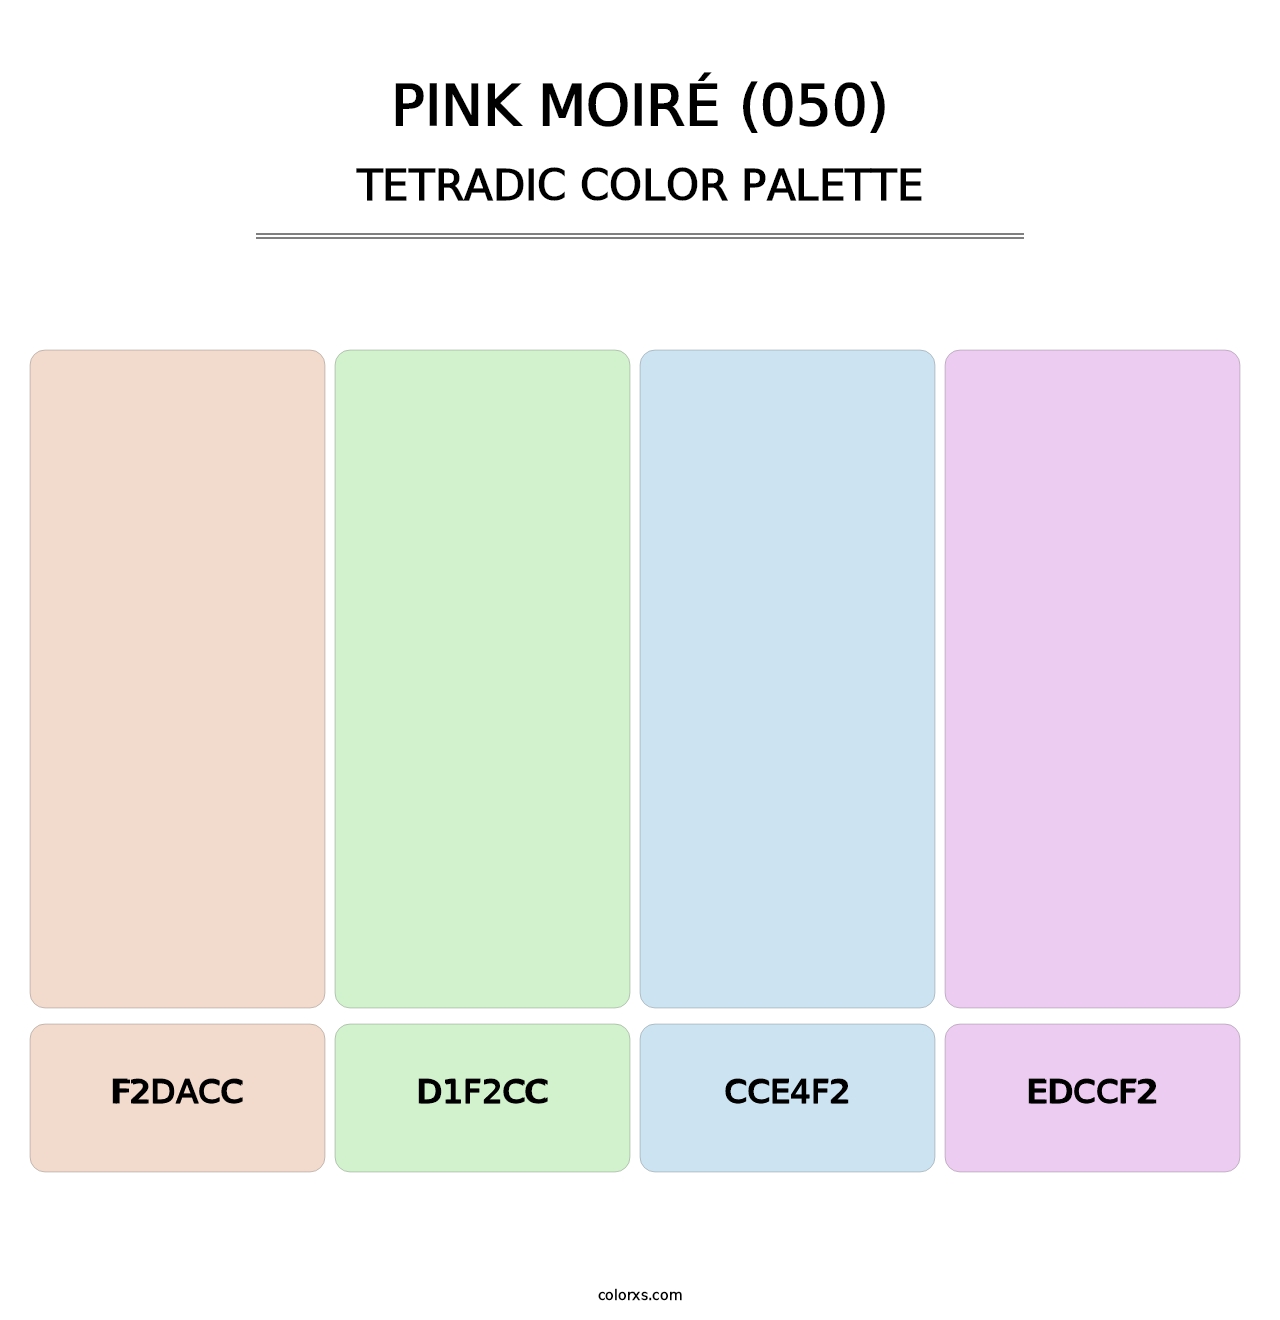 Pink Moiré (050) - Tetradic Color Palette